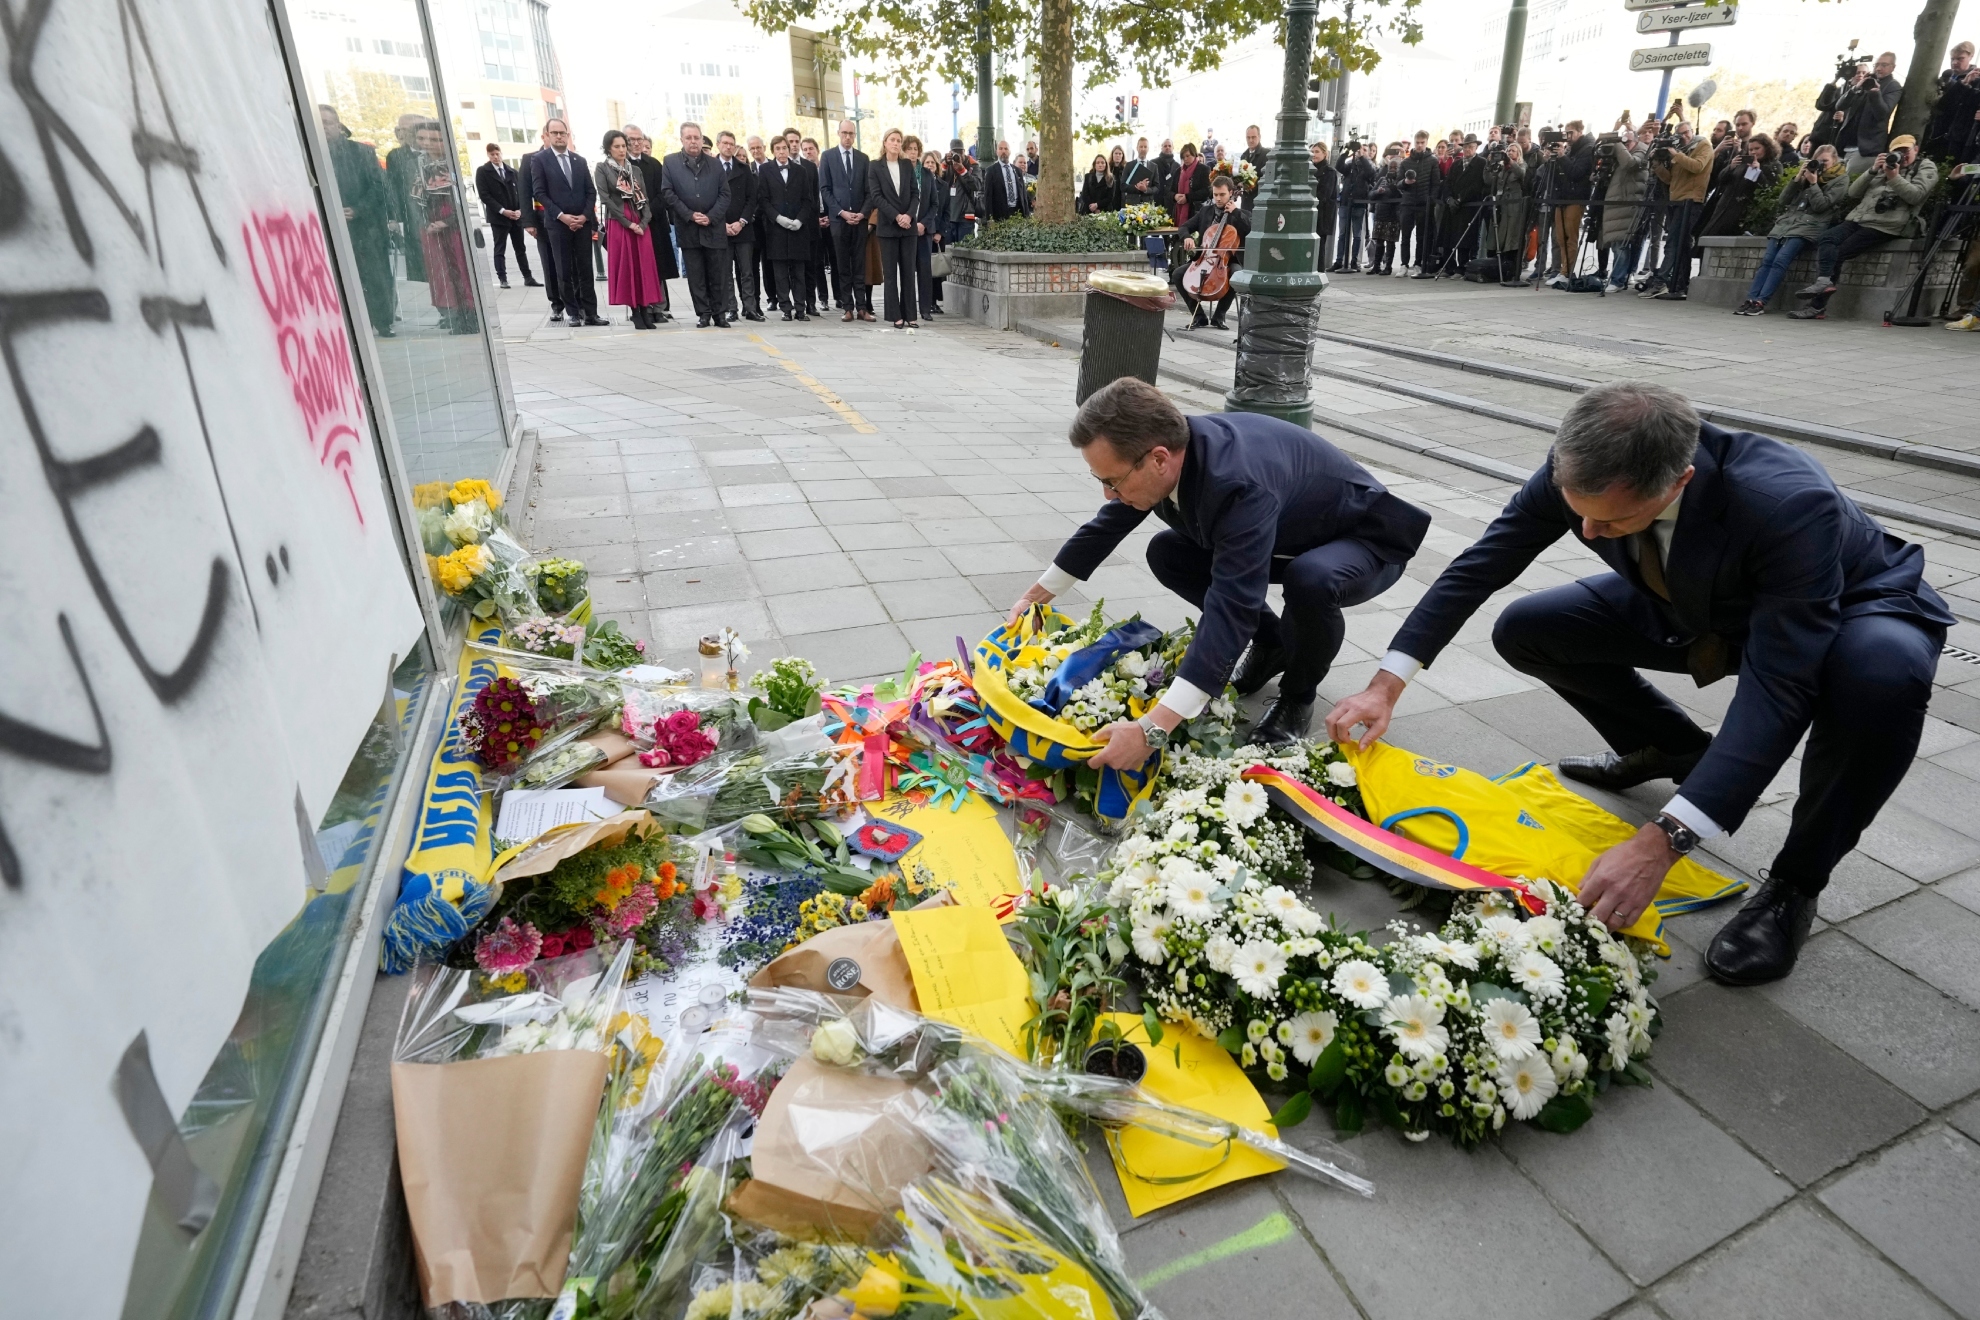 Los primeros ministros de Suecia y Bélgica homenajean a los dos fallecidos.